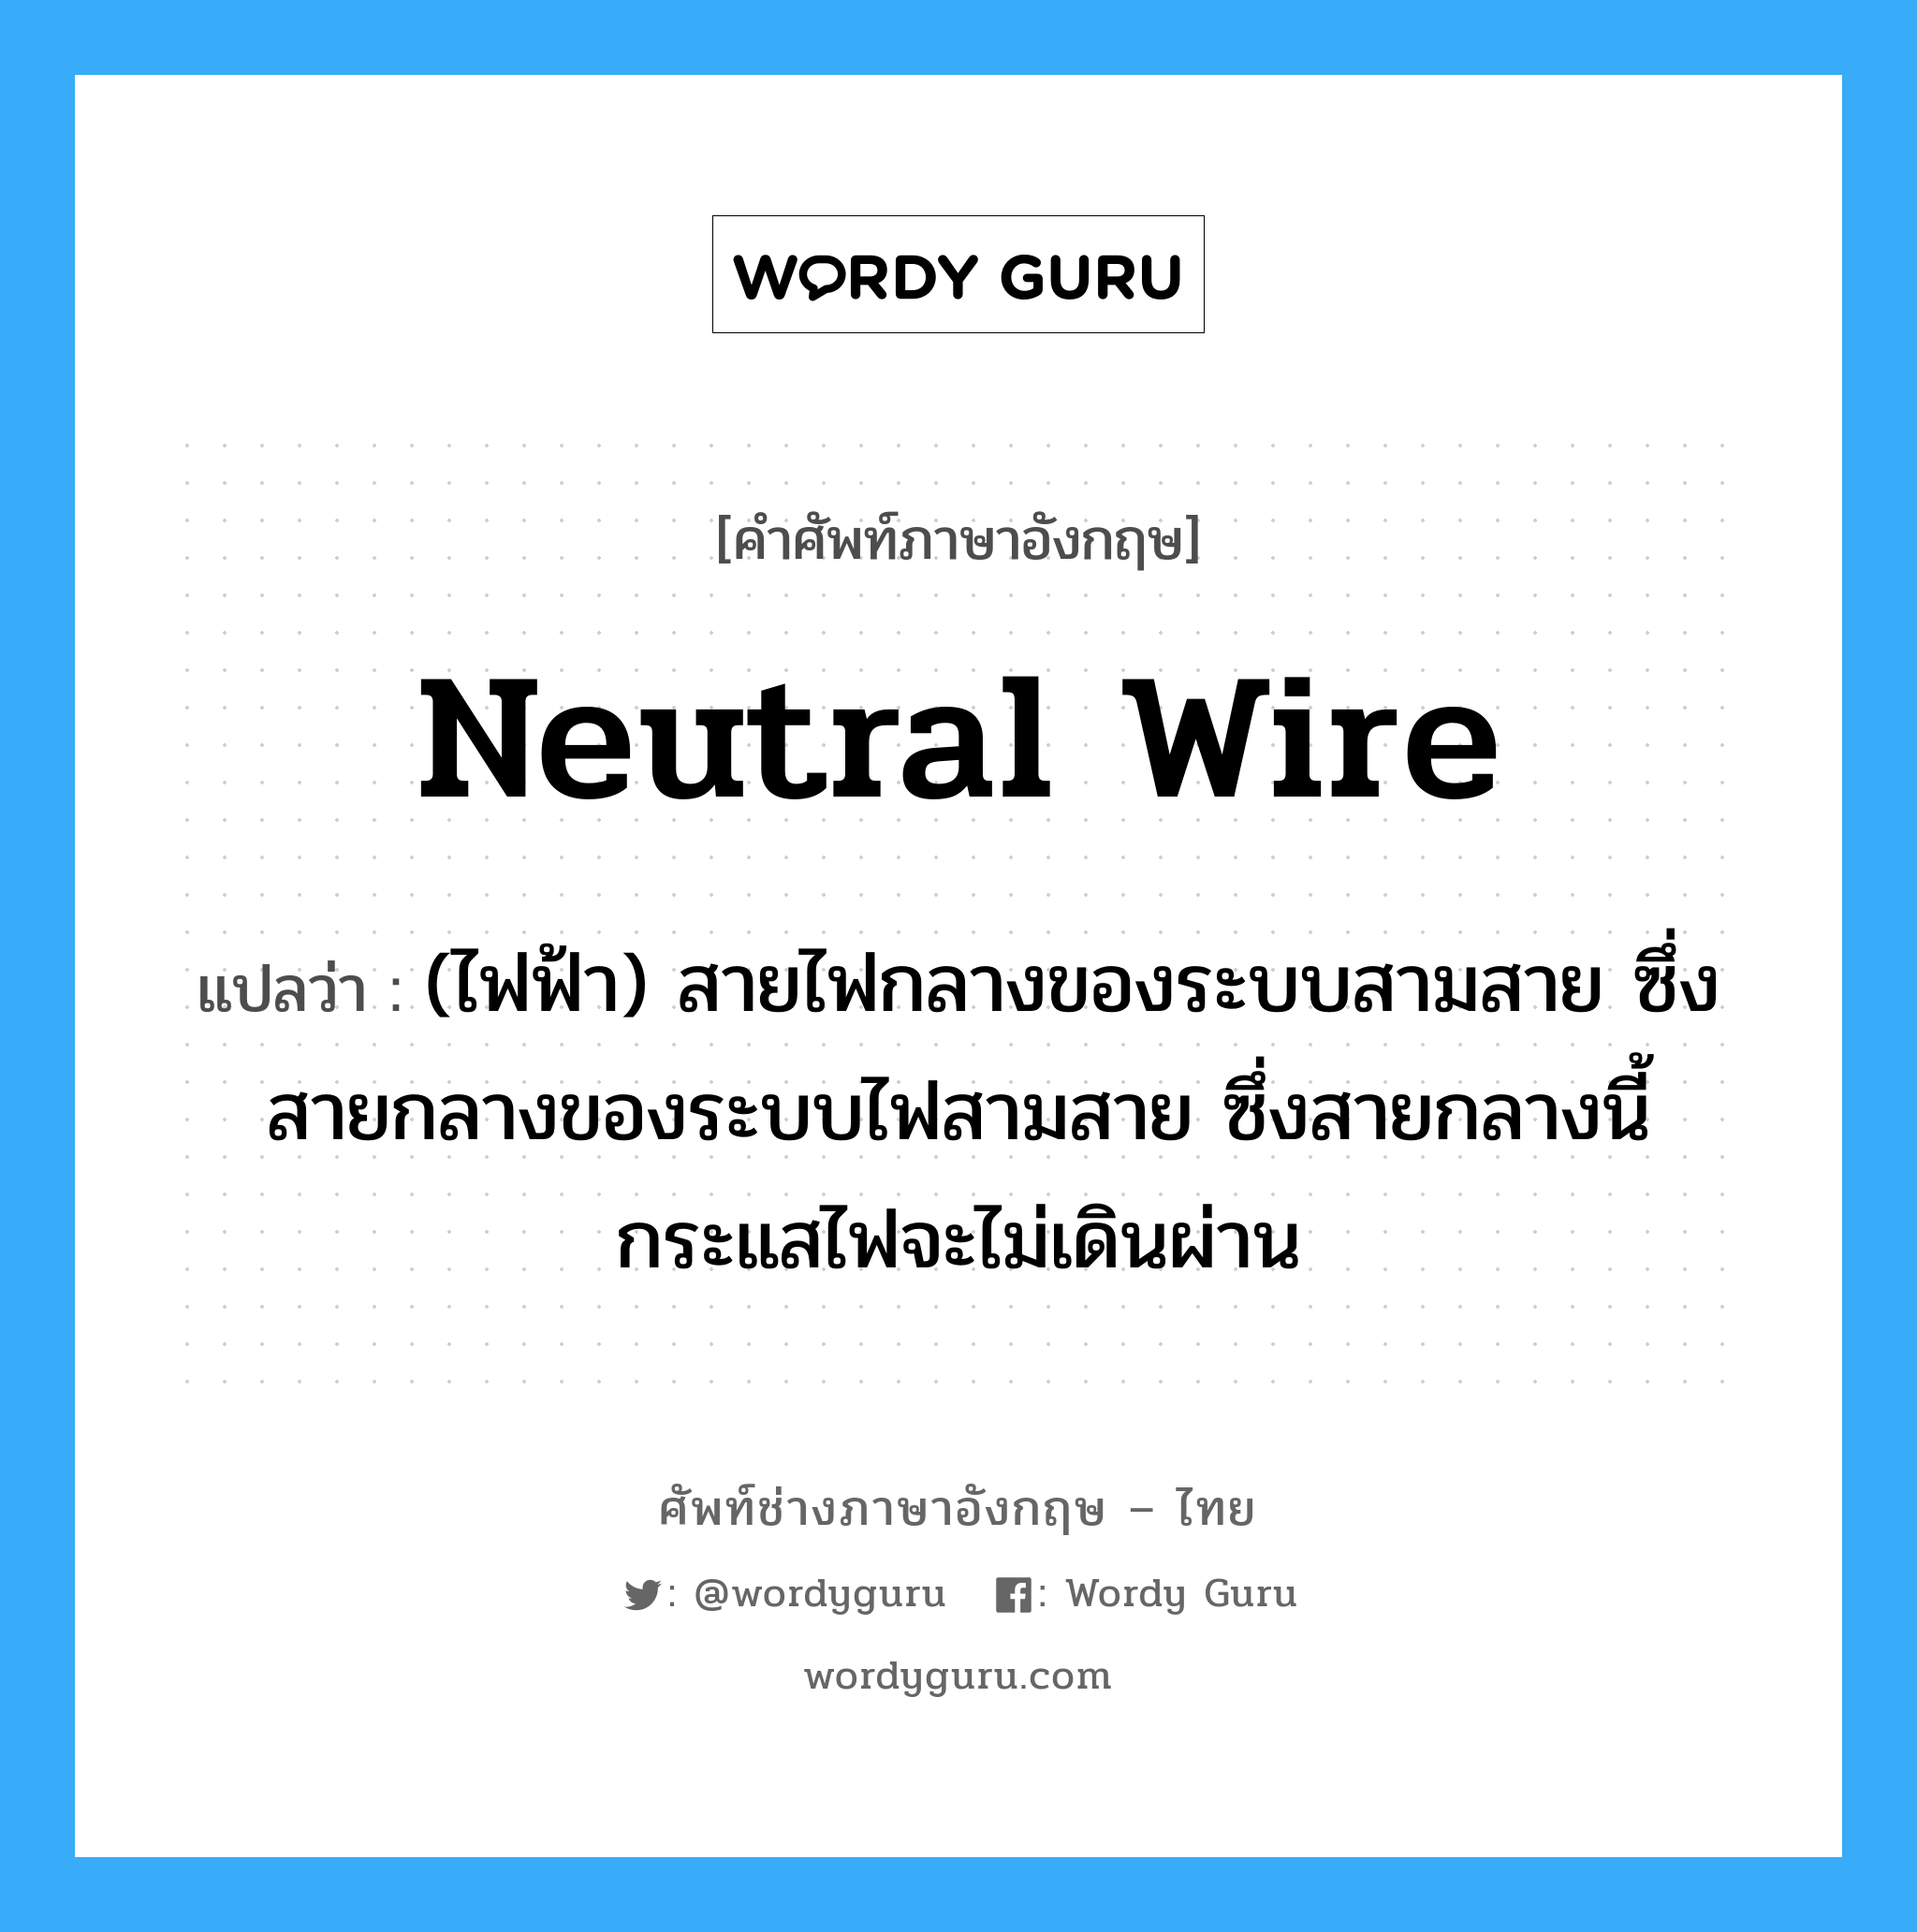 neutral wire แปลว่า?, คำศัพท์ช่างภาษาอังกฤษ - ไทย neutral wire คำศัพท์ภาษาอังกฤษ neutral wire แปลว่า (ไฟฟ้า) สายไฟกลางของระบบสามสาย ซึ่งสายกลางของระบบไฟสามสาย ซึ่งสายกลางนี้กระแสไฟจะไม่เดินผ่าน